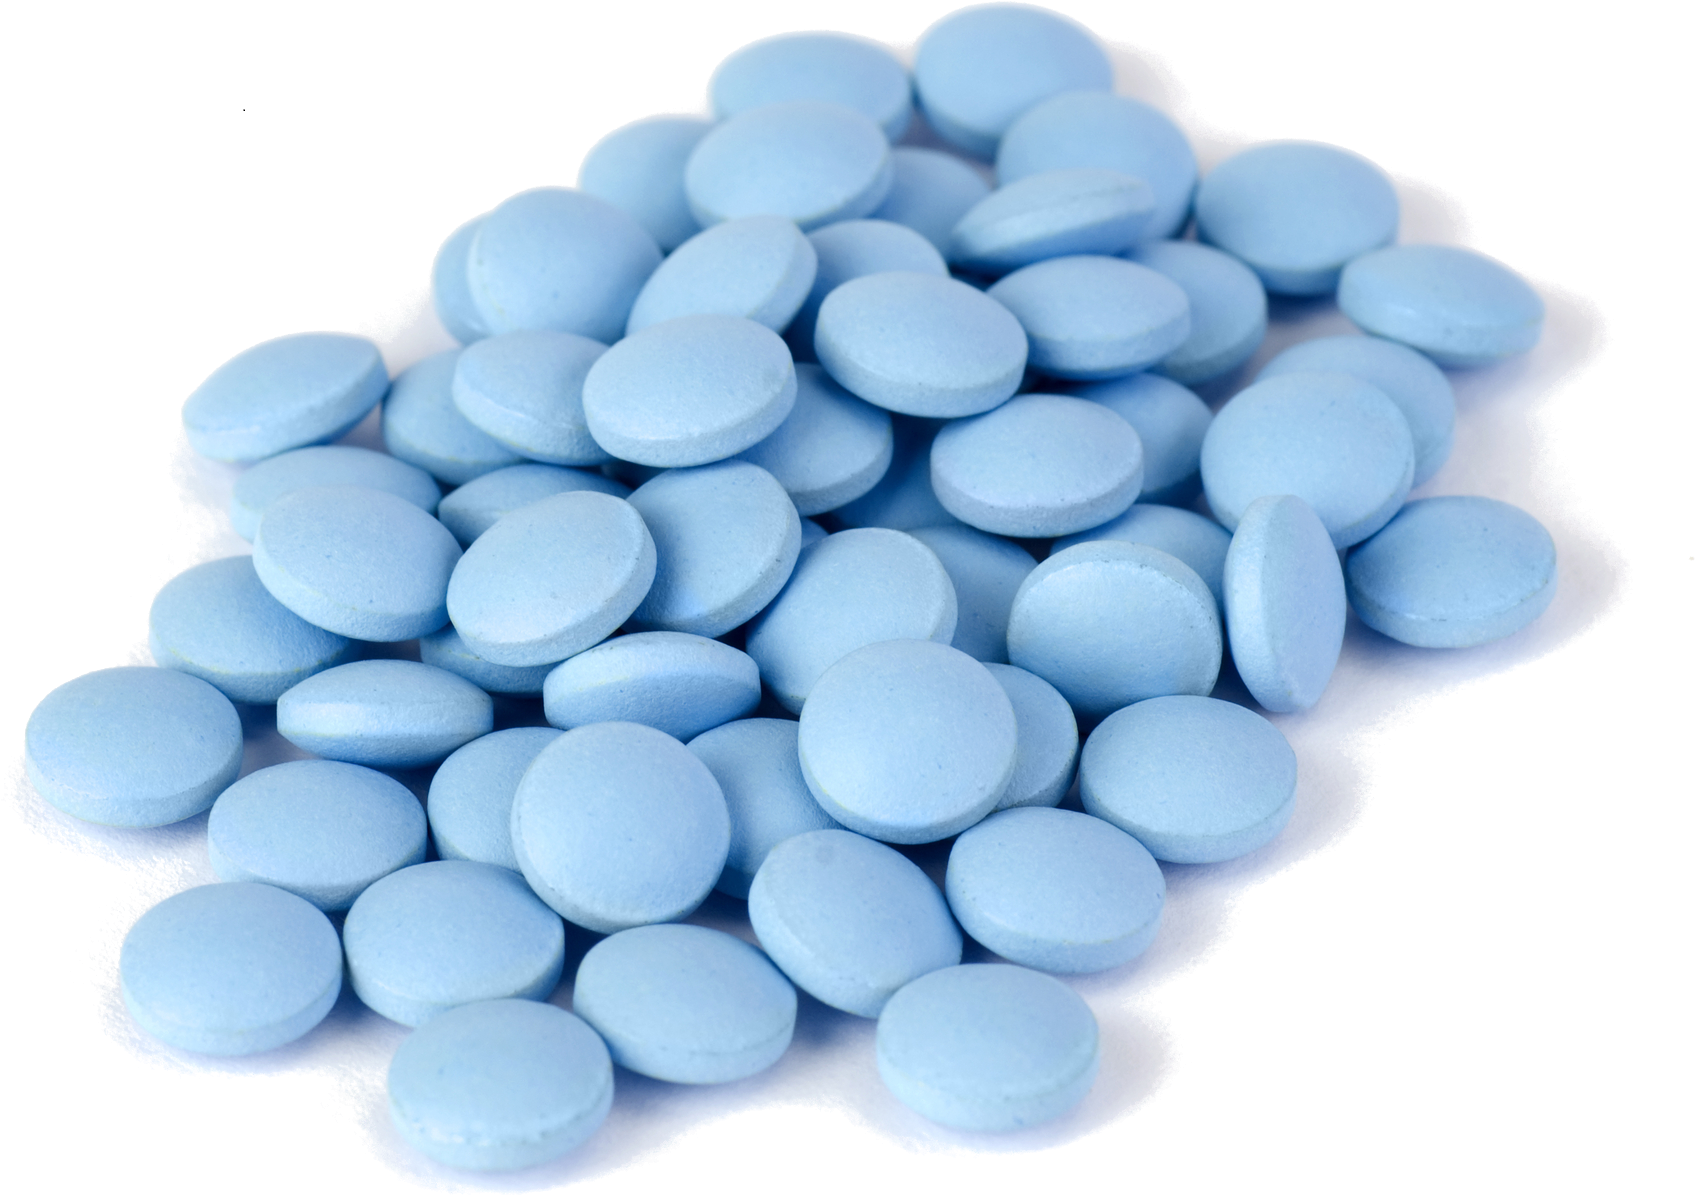 A Pile Of Blue Pills